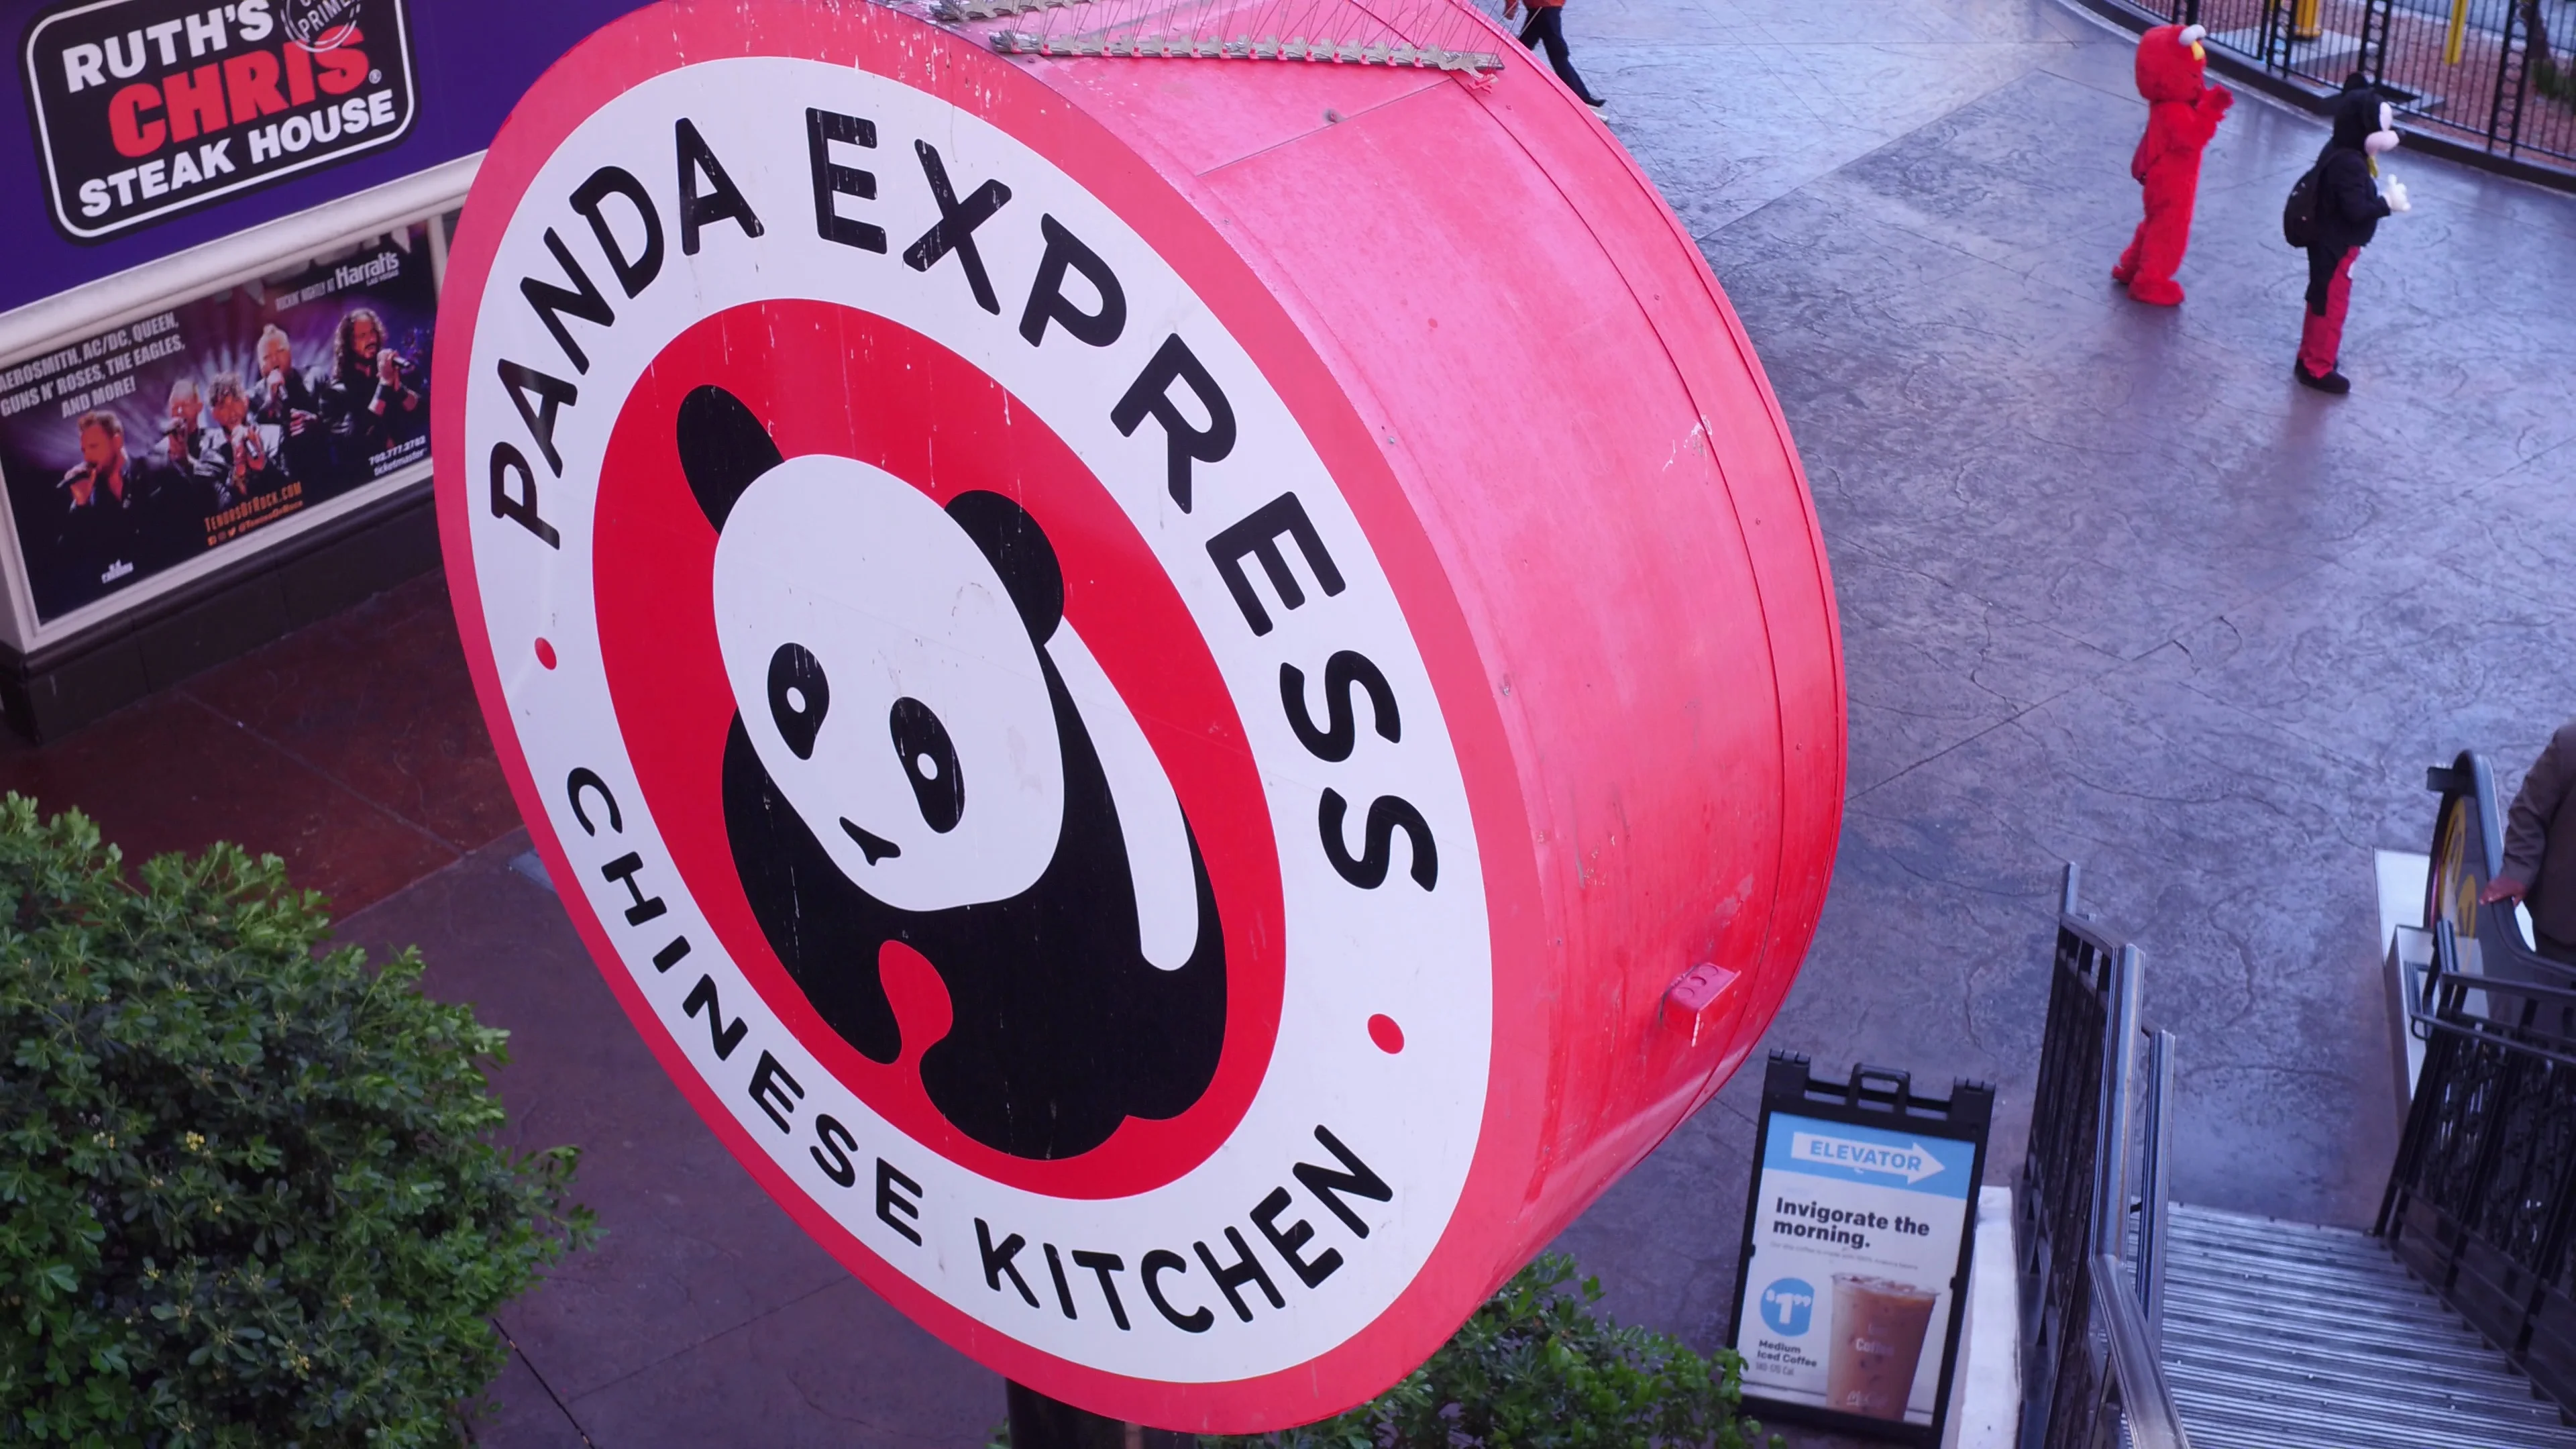 panda express sign